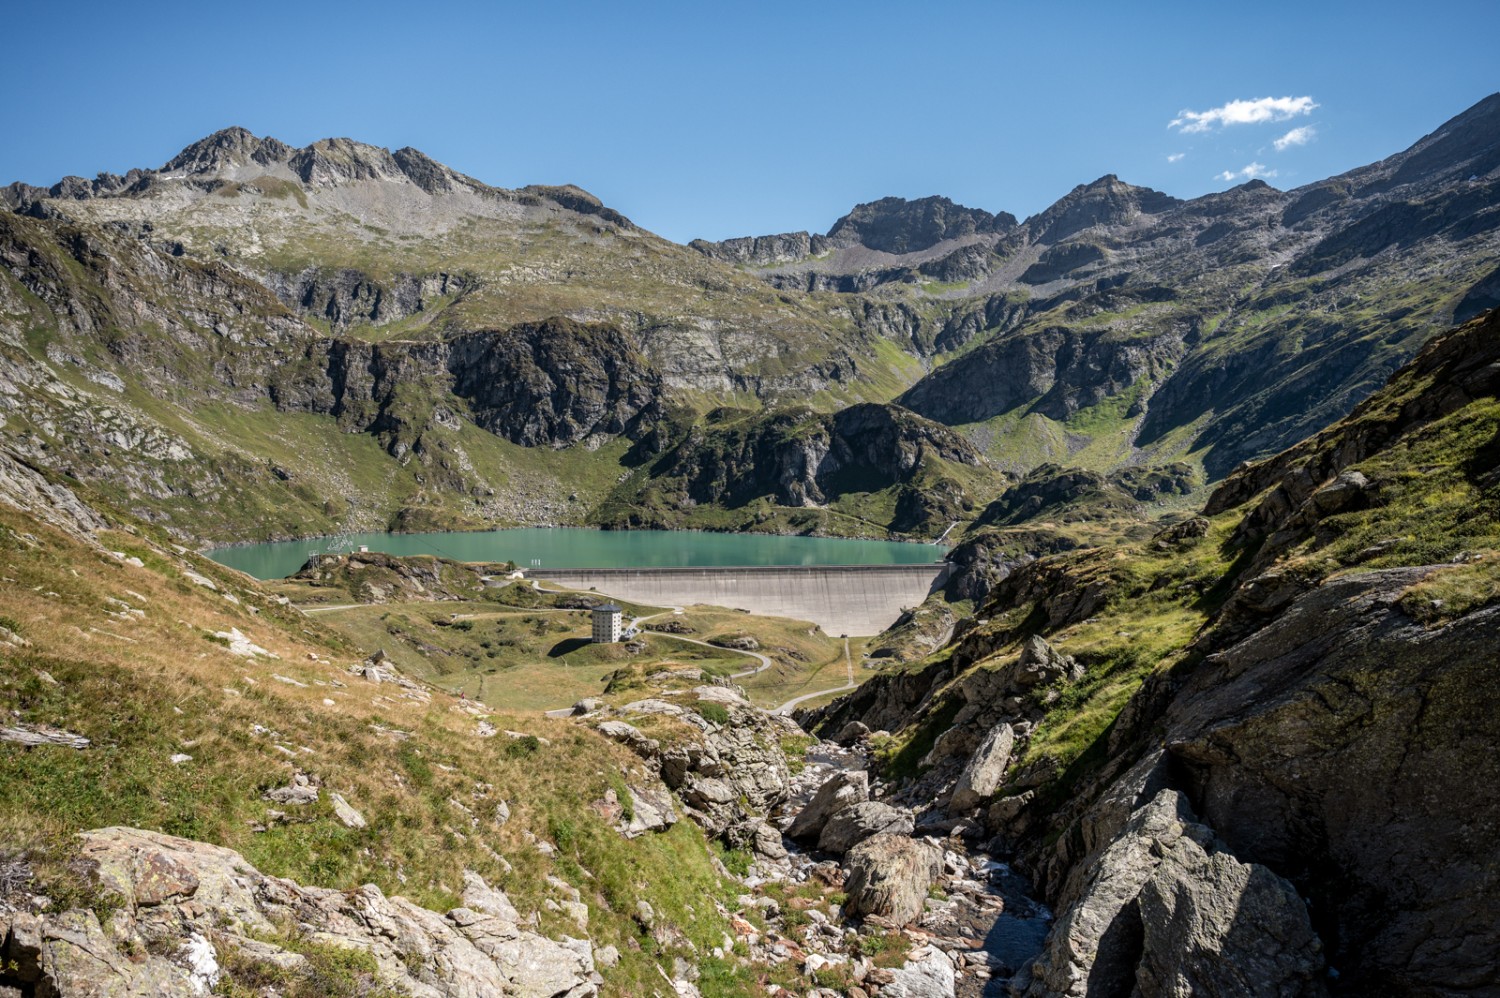 Regard en arrière sur le Lago di Robièi, point de départ de la randonnée. Photo: Jon Guler